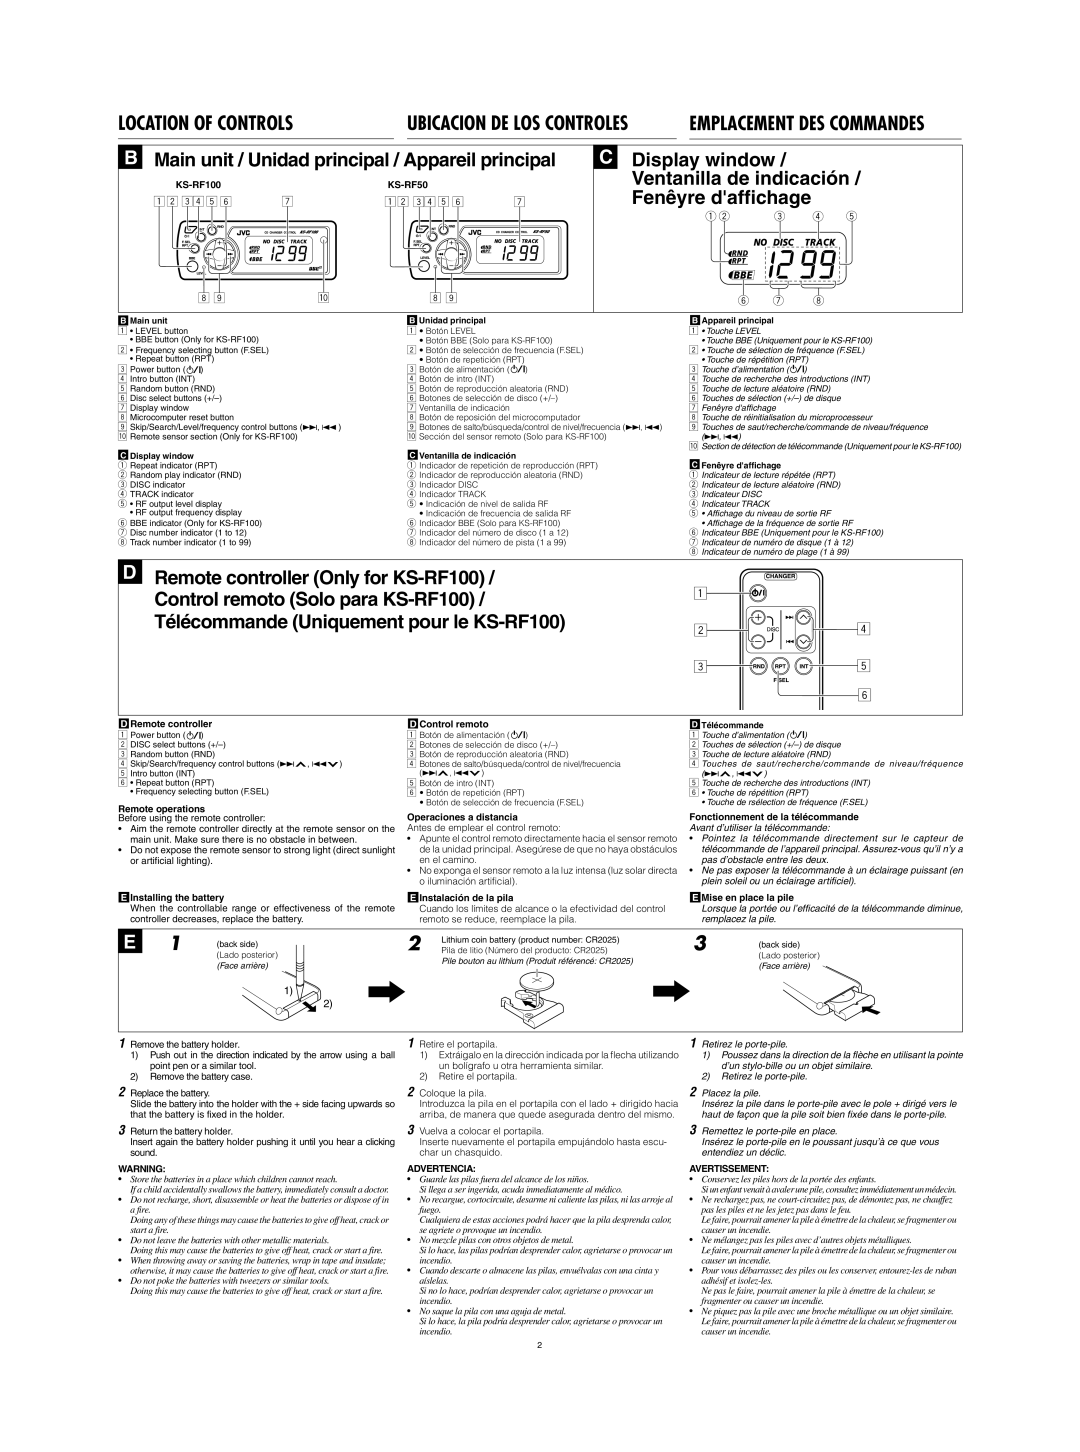 JVC KS-RF100 manual Location Of Controls, B Main unit / Unidad principal / Appareil principal, Ubicacion De Los Controles 